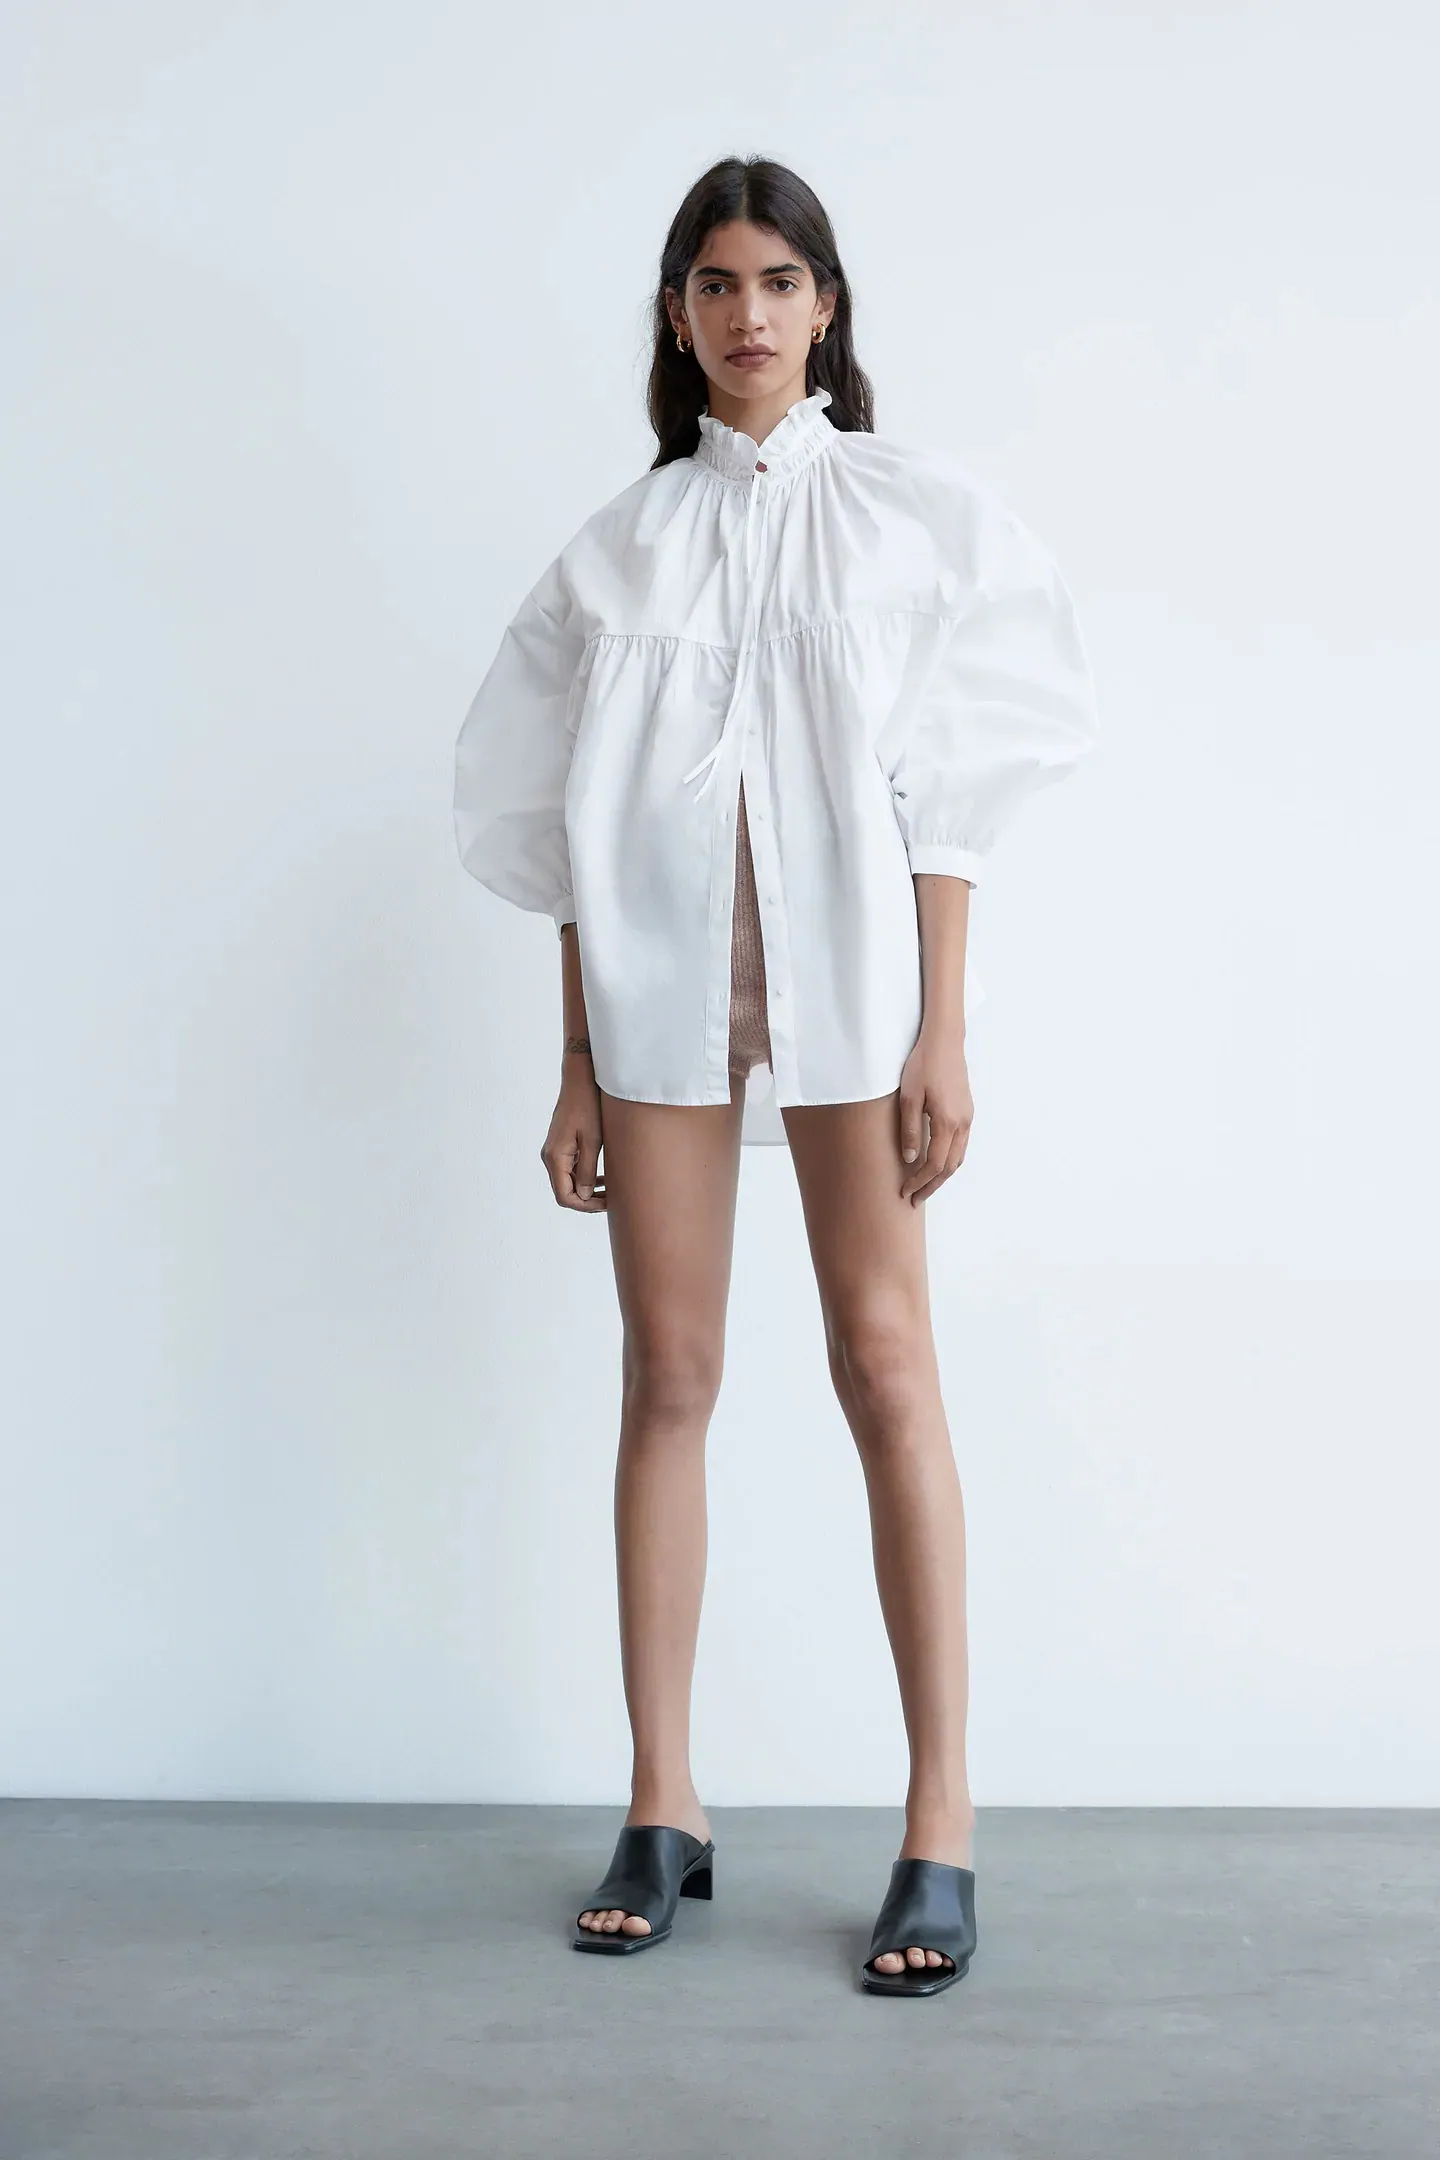 Fotos: Las camisas blancas más de las rebajas de Zara que serán tendencia esta primavera y que ya nos hacen soñar con el buen tiempo | Mujer Hoy